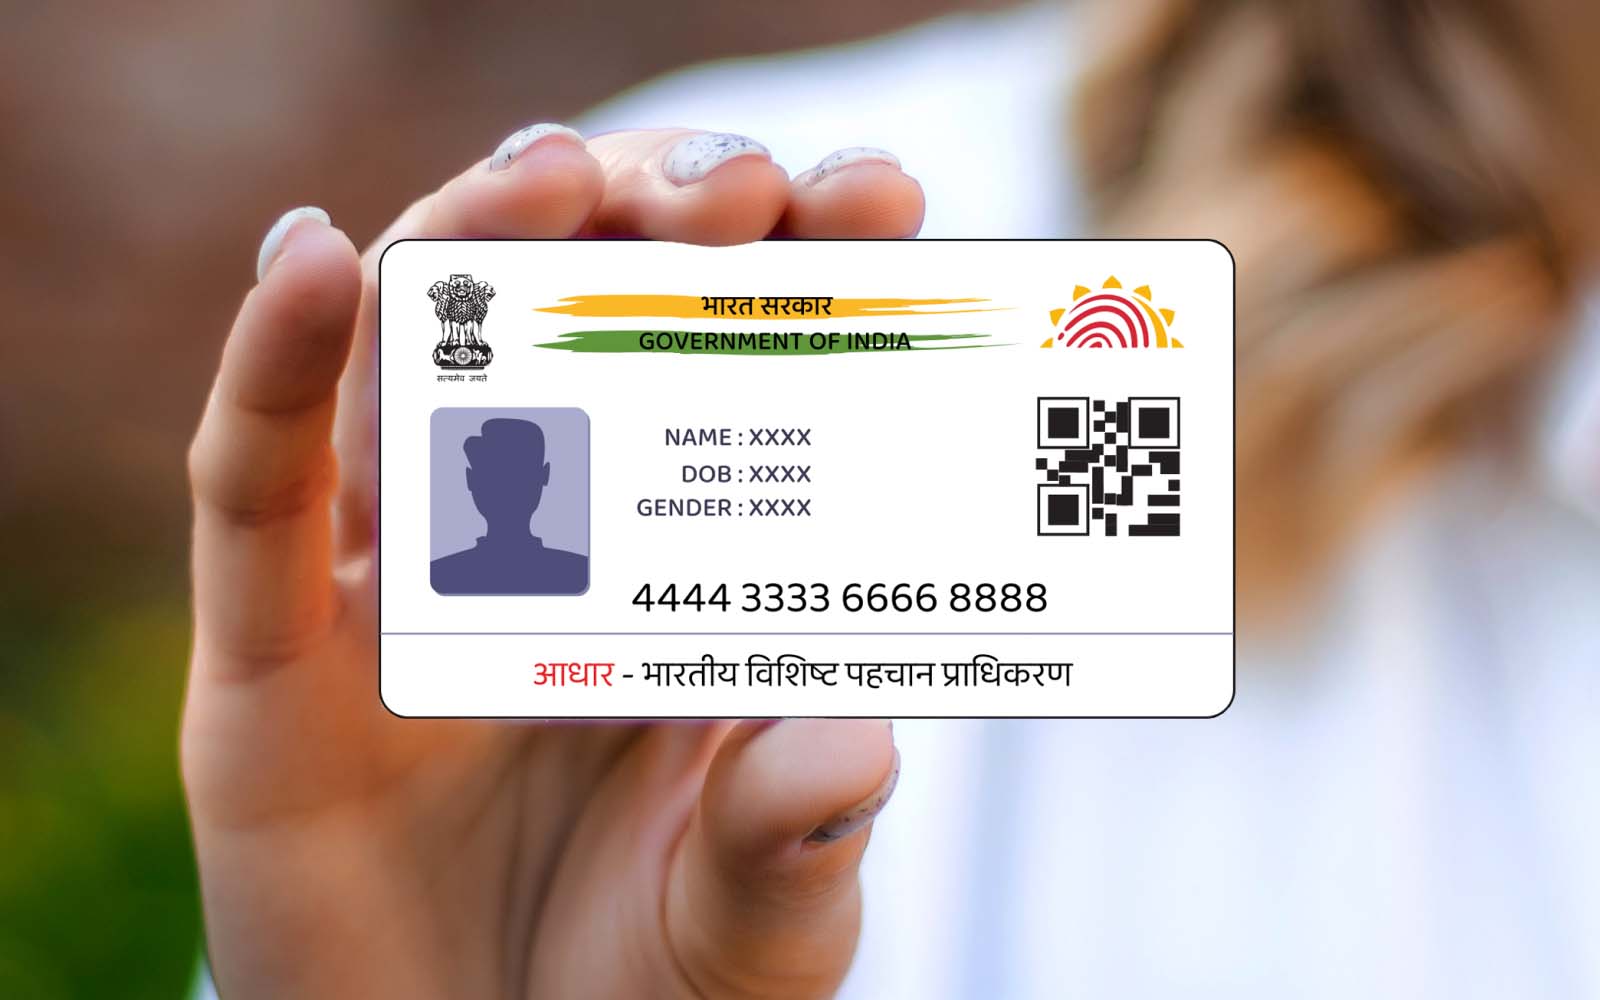 Lost Your Aadhaar Card? Get Duplicate Aadhaar Card in 2023